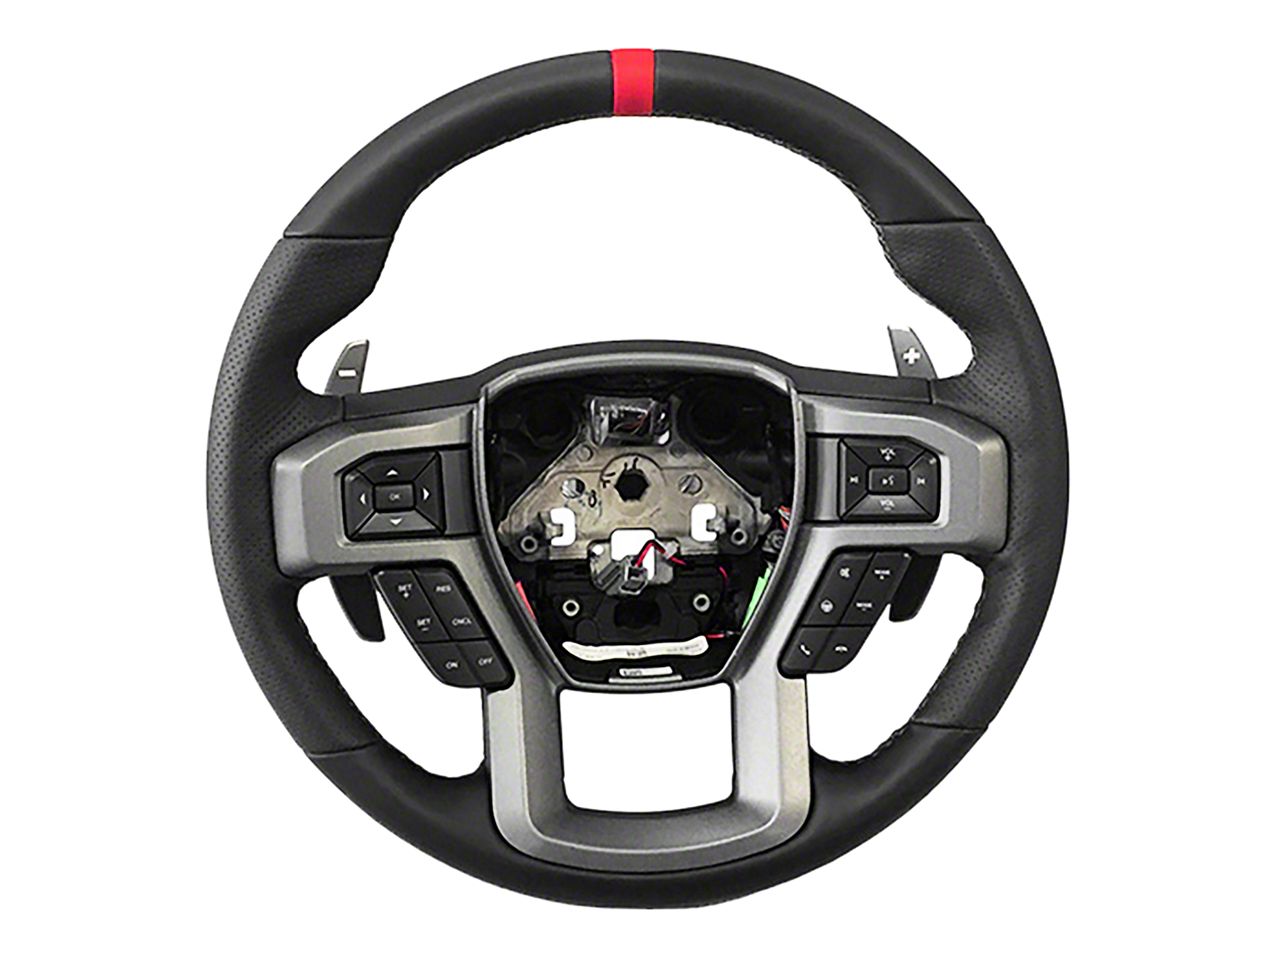 Silverado Steering Wheels & Accessories 1999-2006